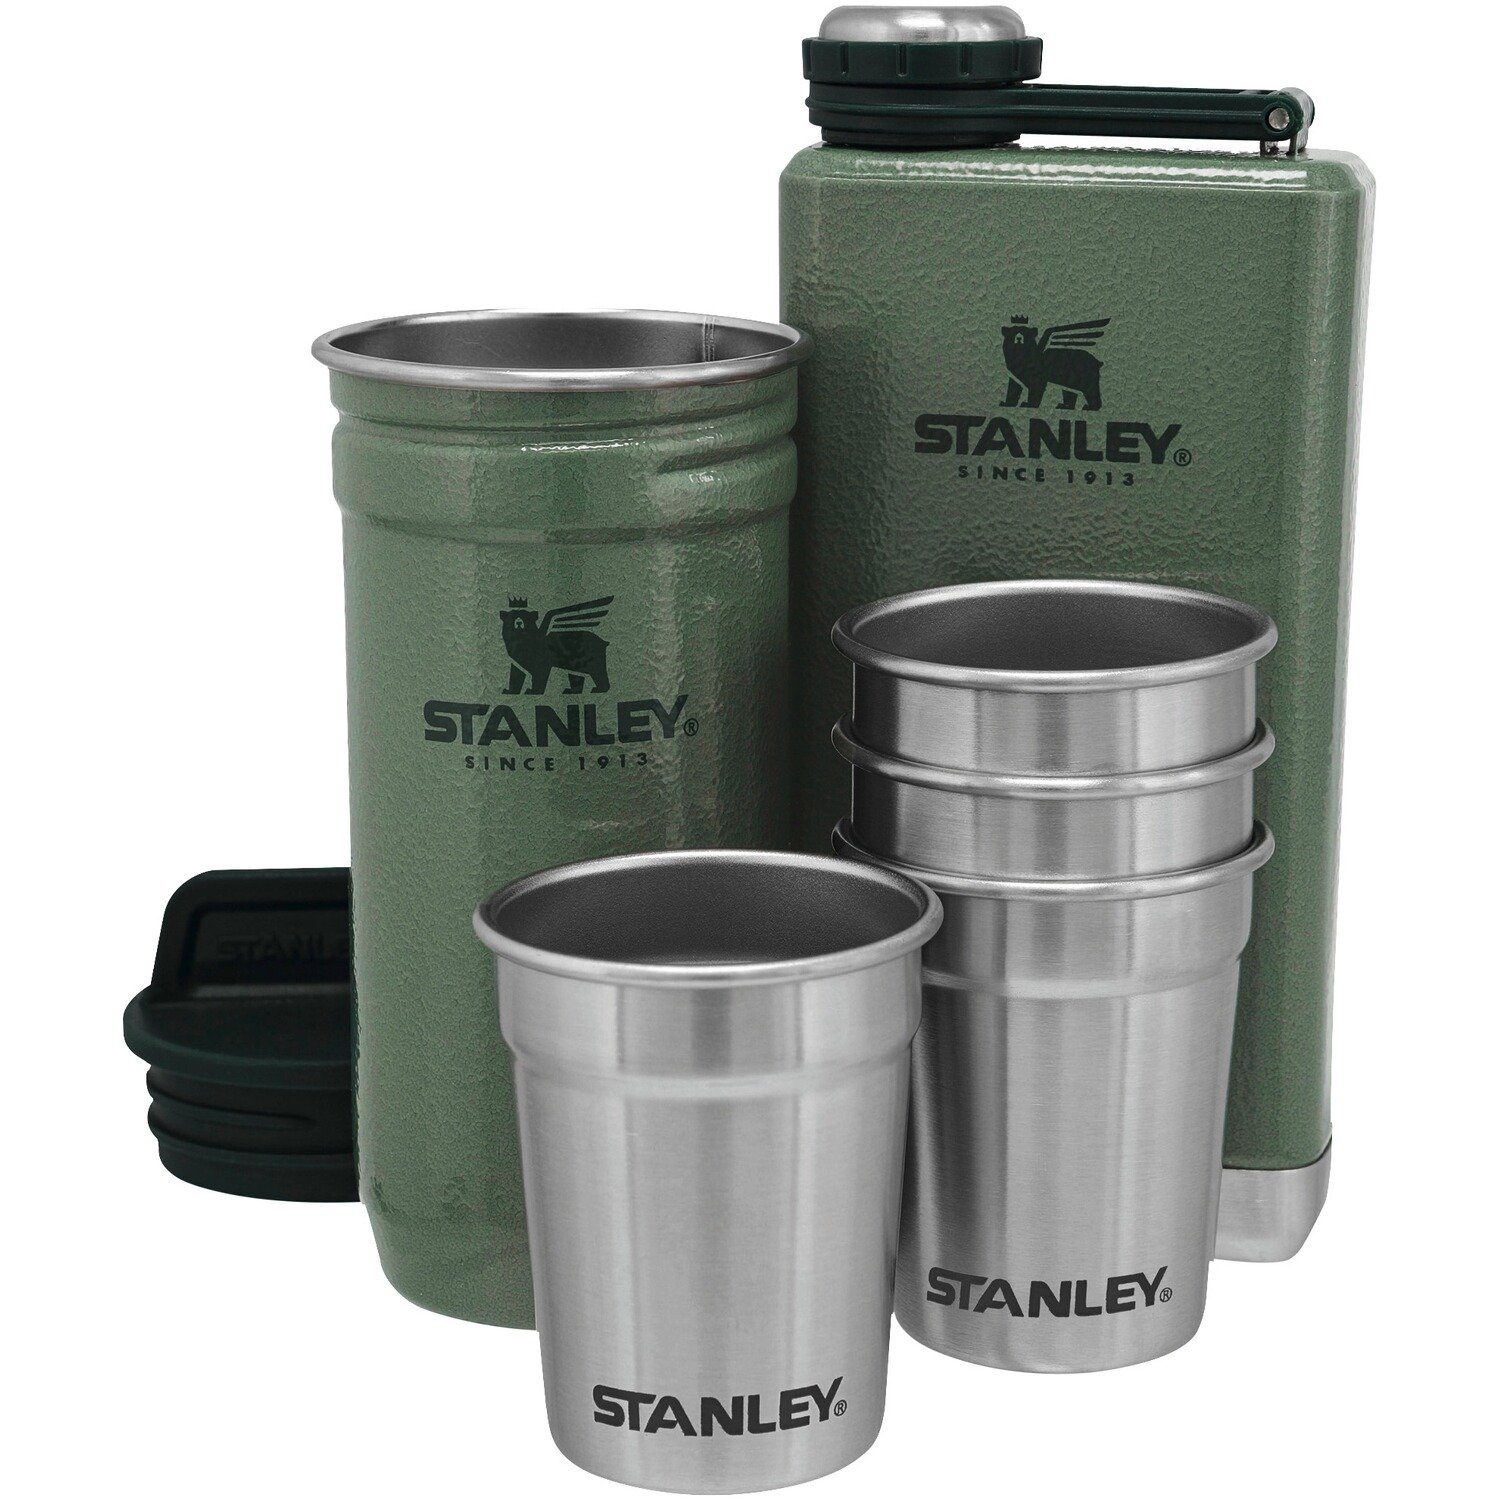 Stanley 1913 STANLEY Isolierflasche Adventure Pre-Party Shot & Flask Set Grün